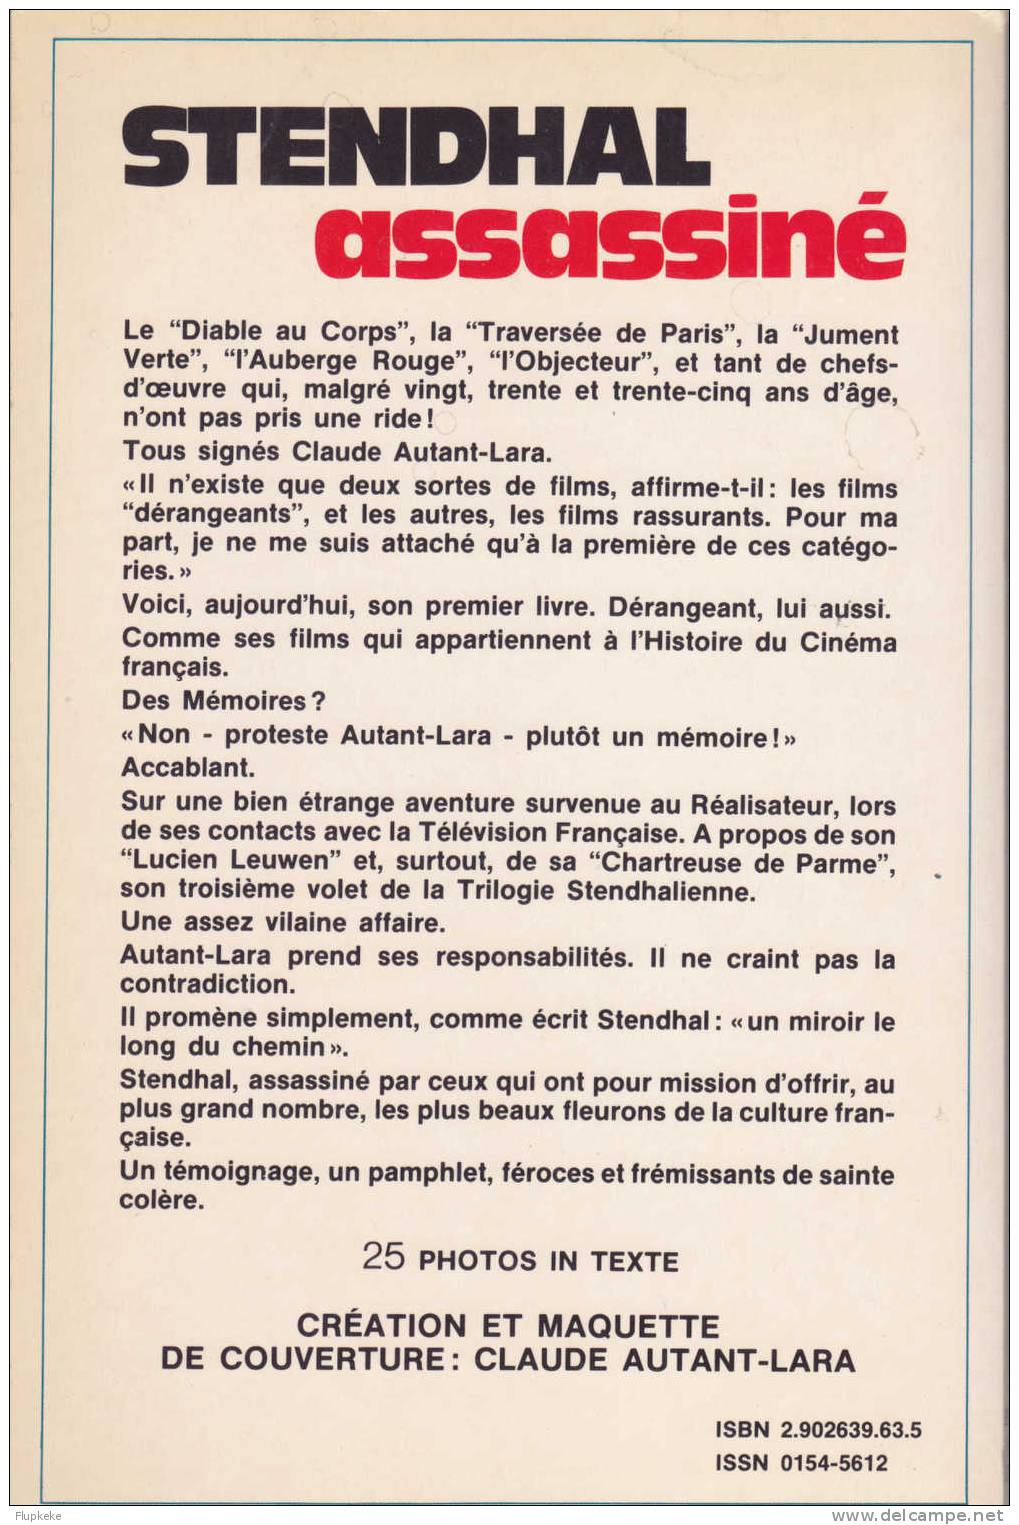 Télémafia Claude Autant-Lara Collection Témoignage Éditions Alain Lefeuvre 1981 - Cinéma/Télévision